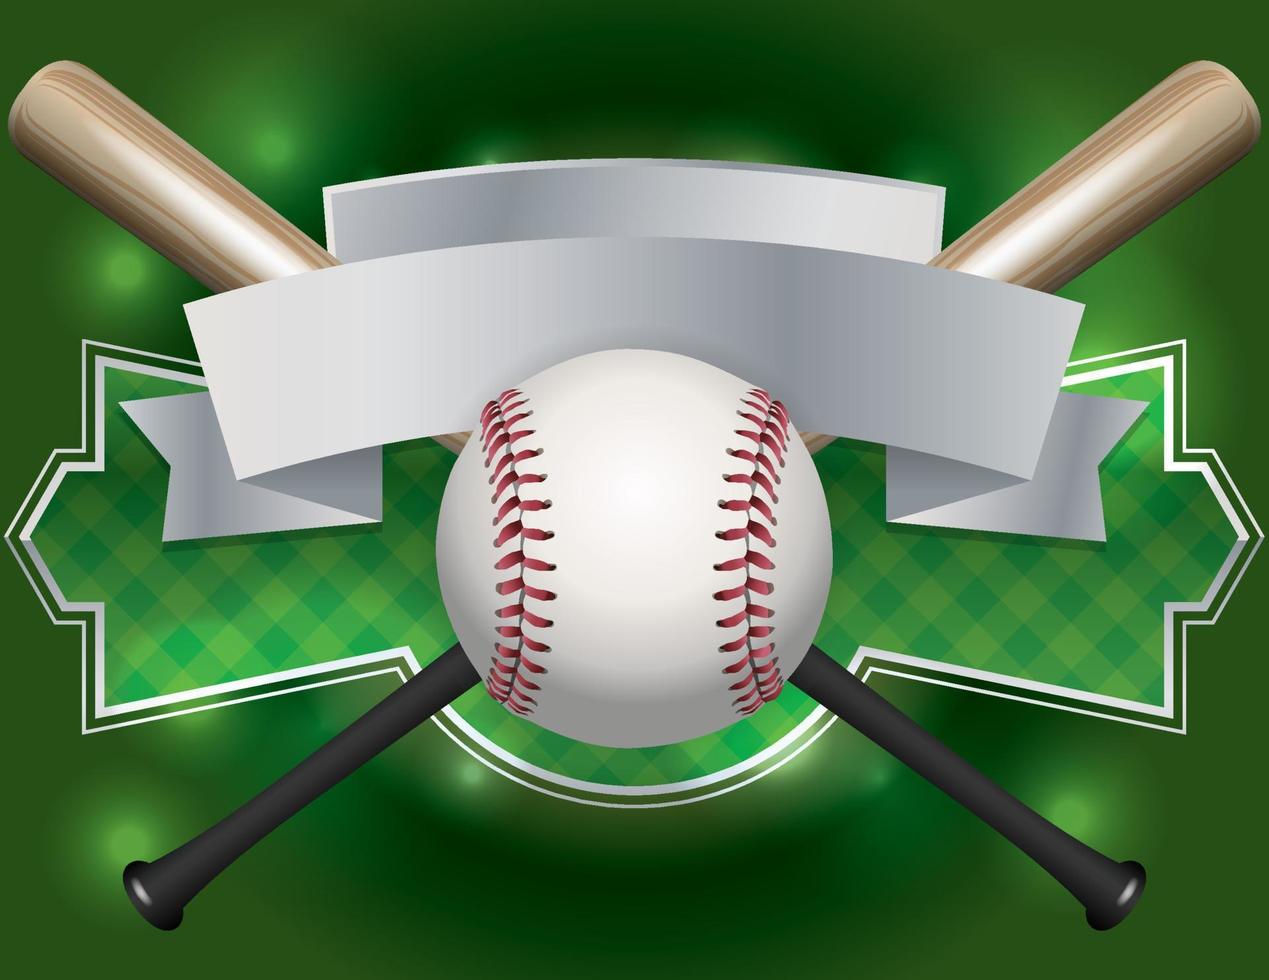 Baseball Emblem and Banner Illustration vector